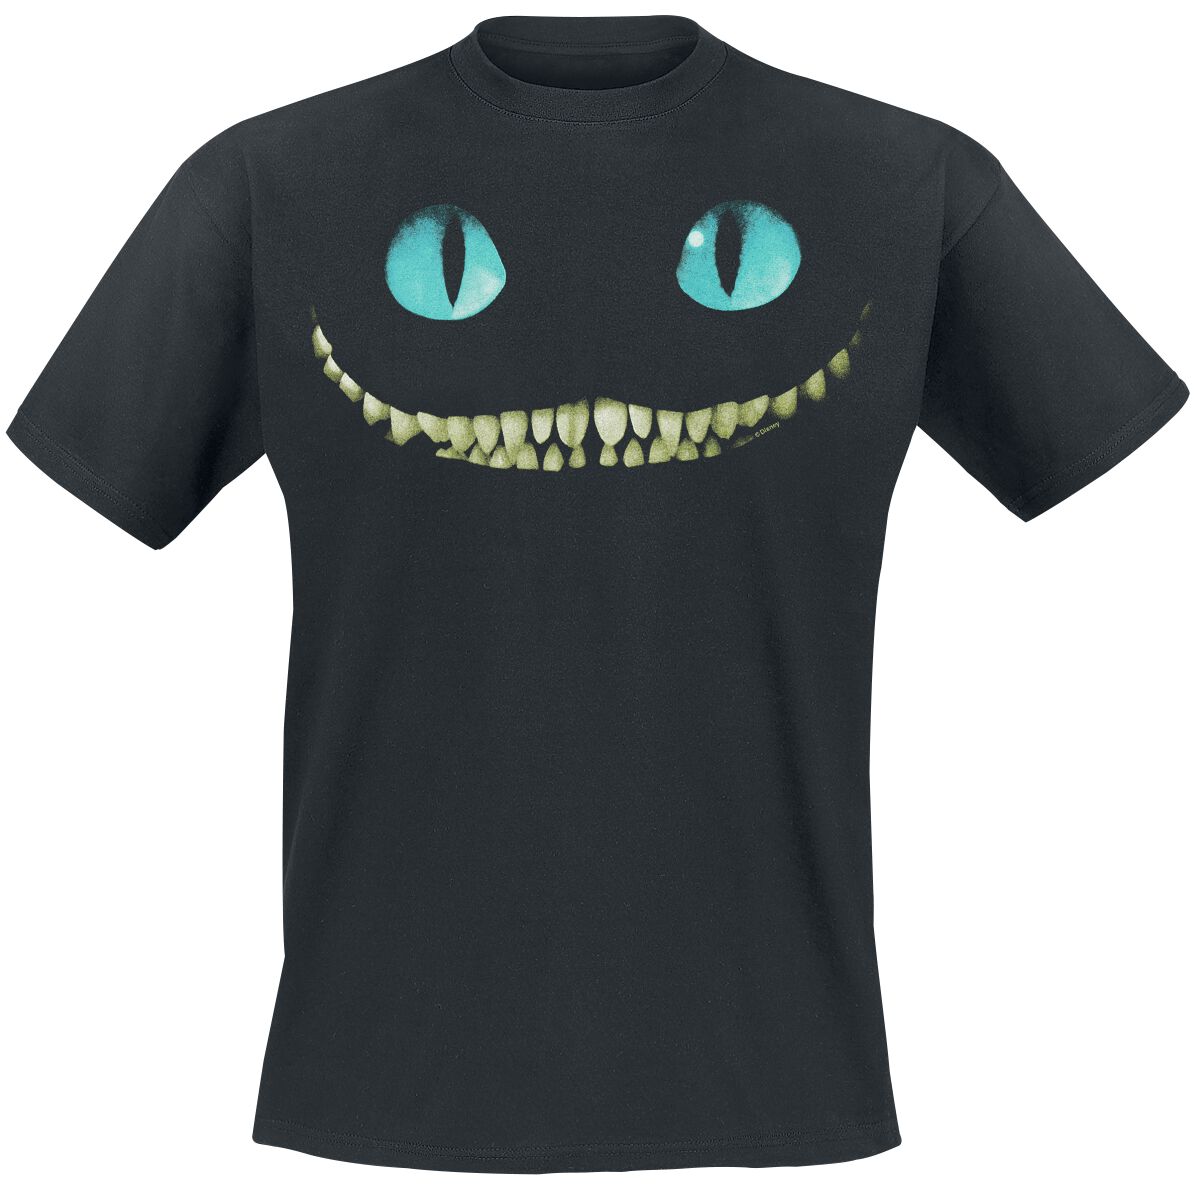 Alice im Wunderland - Disney T-Shirt - Grinsekatze - Lächeln - S bis XL - für Männer - Größe M - schwarz  - Lizenzierter Fanartikel